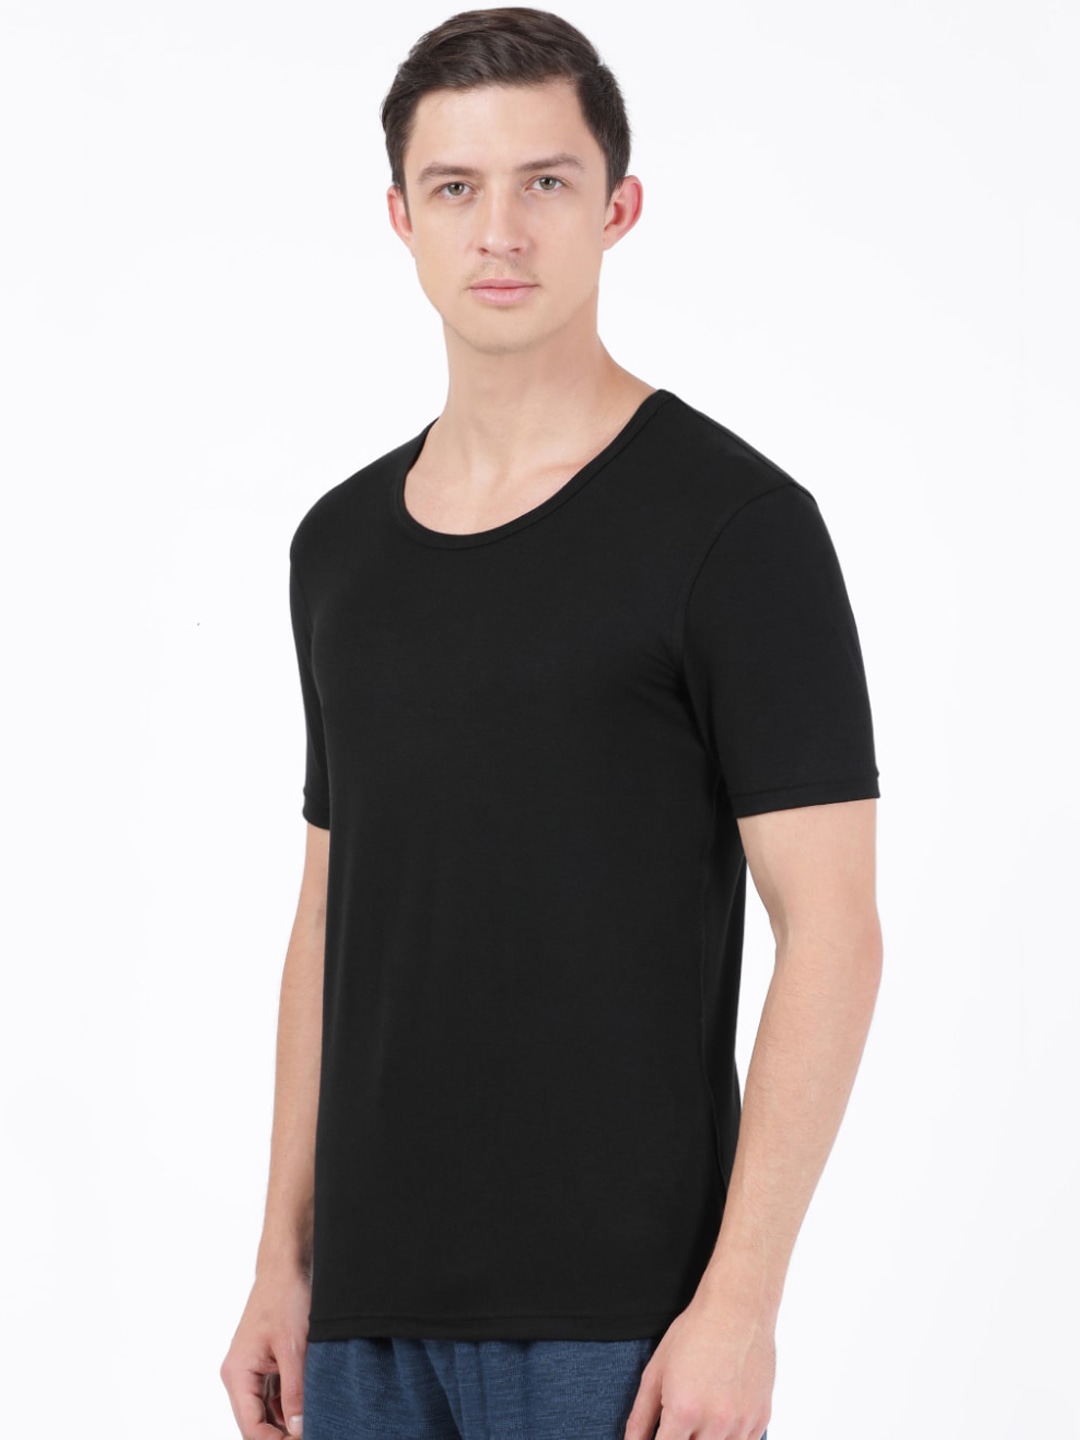 Clothing Innerwear Vests | Jockey Men Black Solid Half Sleeve Thermal Innerwear Vest - UK13435